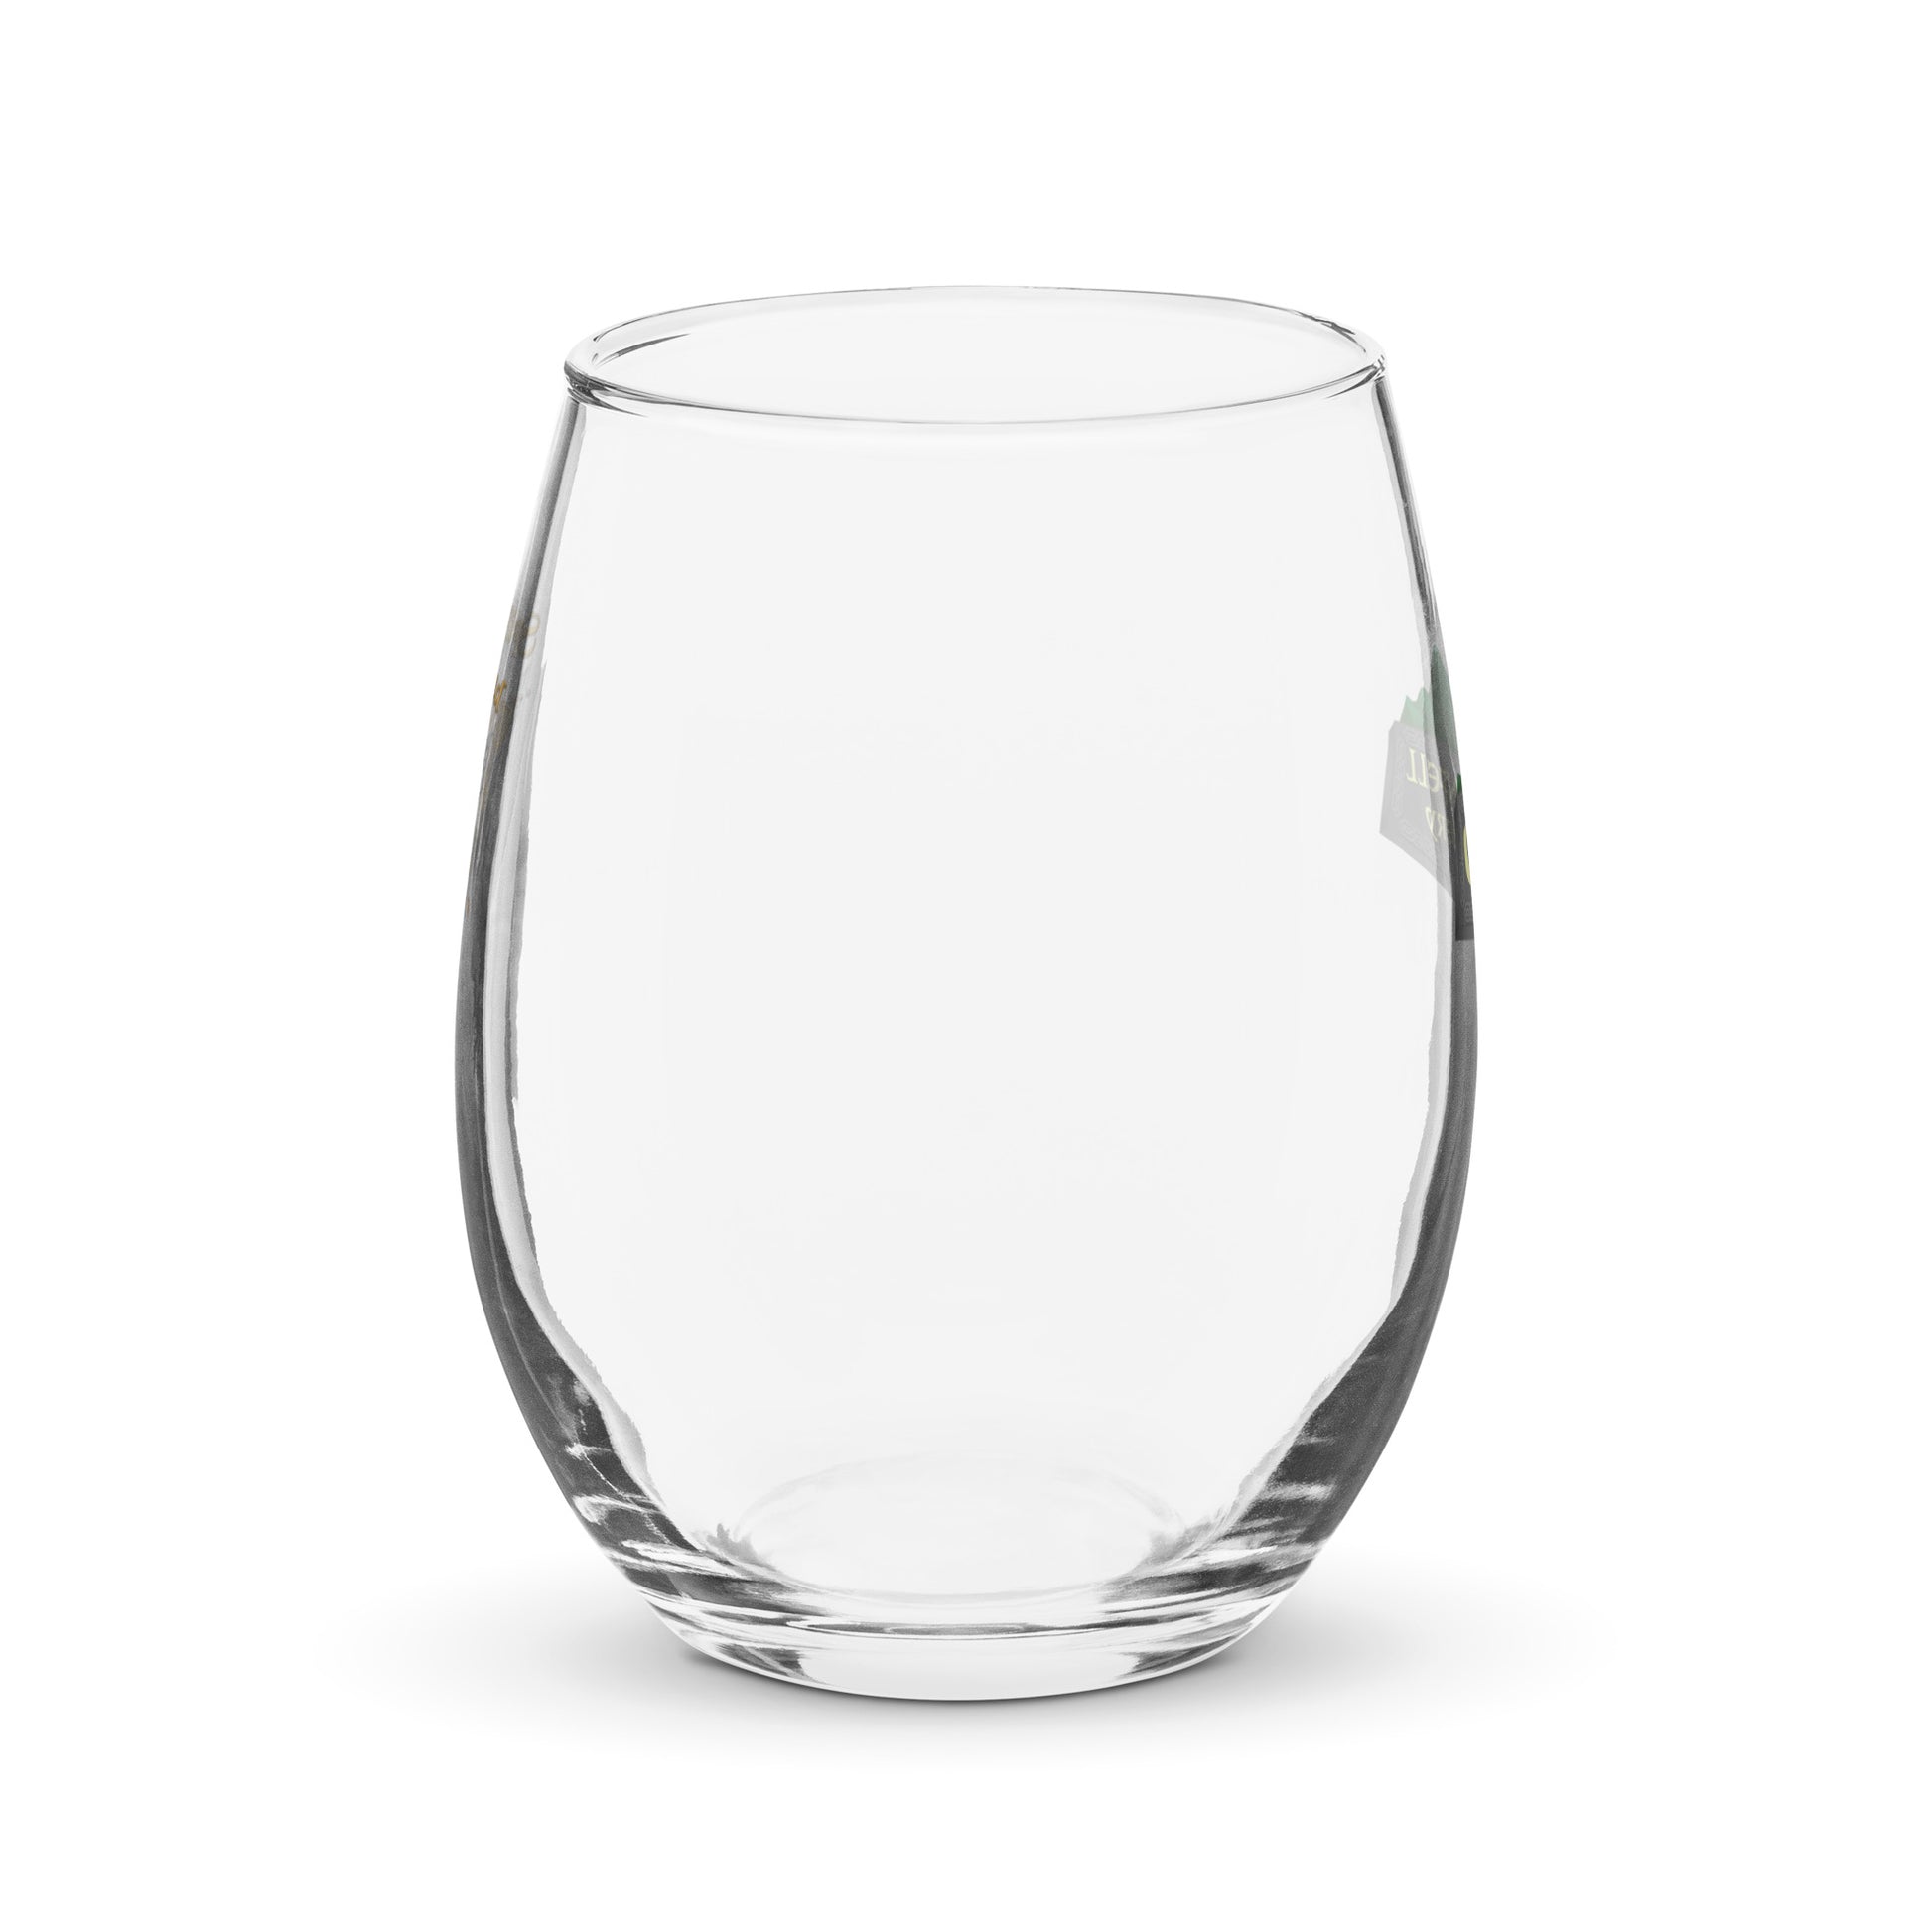 https://groennfell.com/cdn/shop/files/stemless-wine-glass-_15-oz_-front-64b819d170388_1946x.jpg?v=1691095697